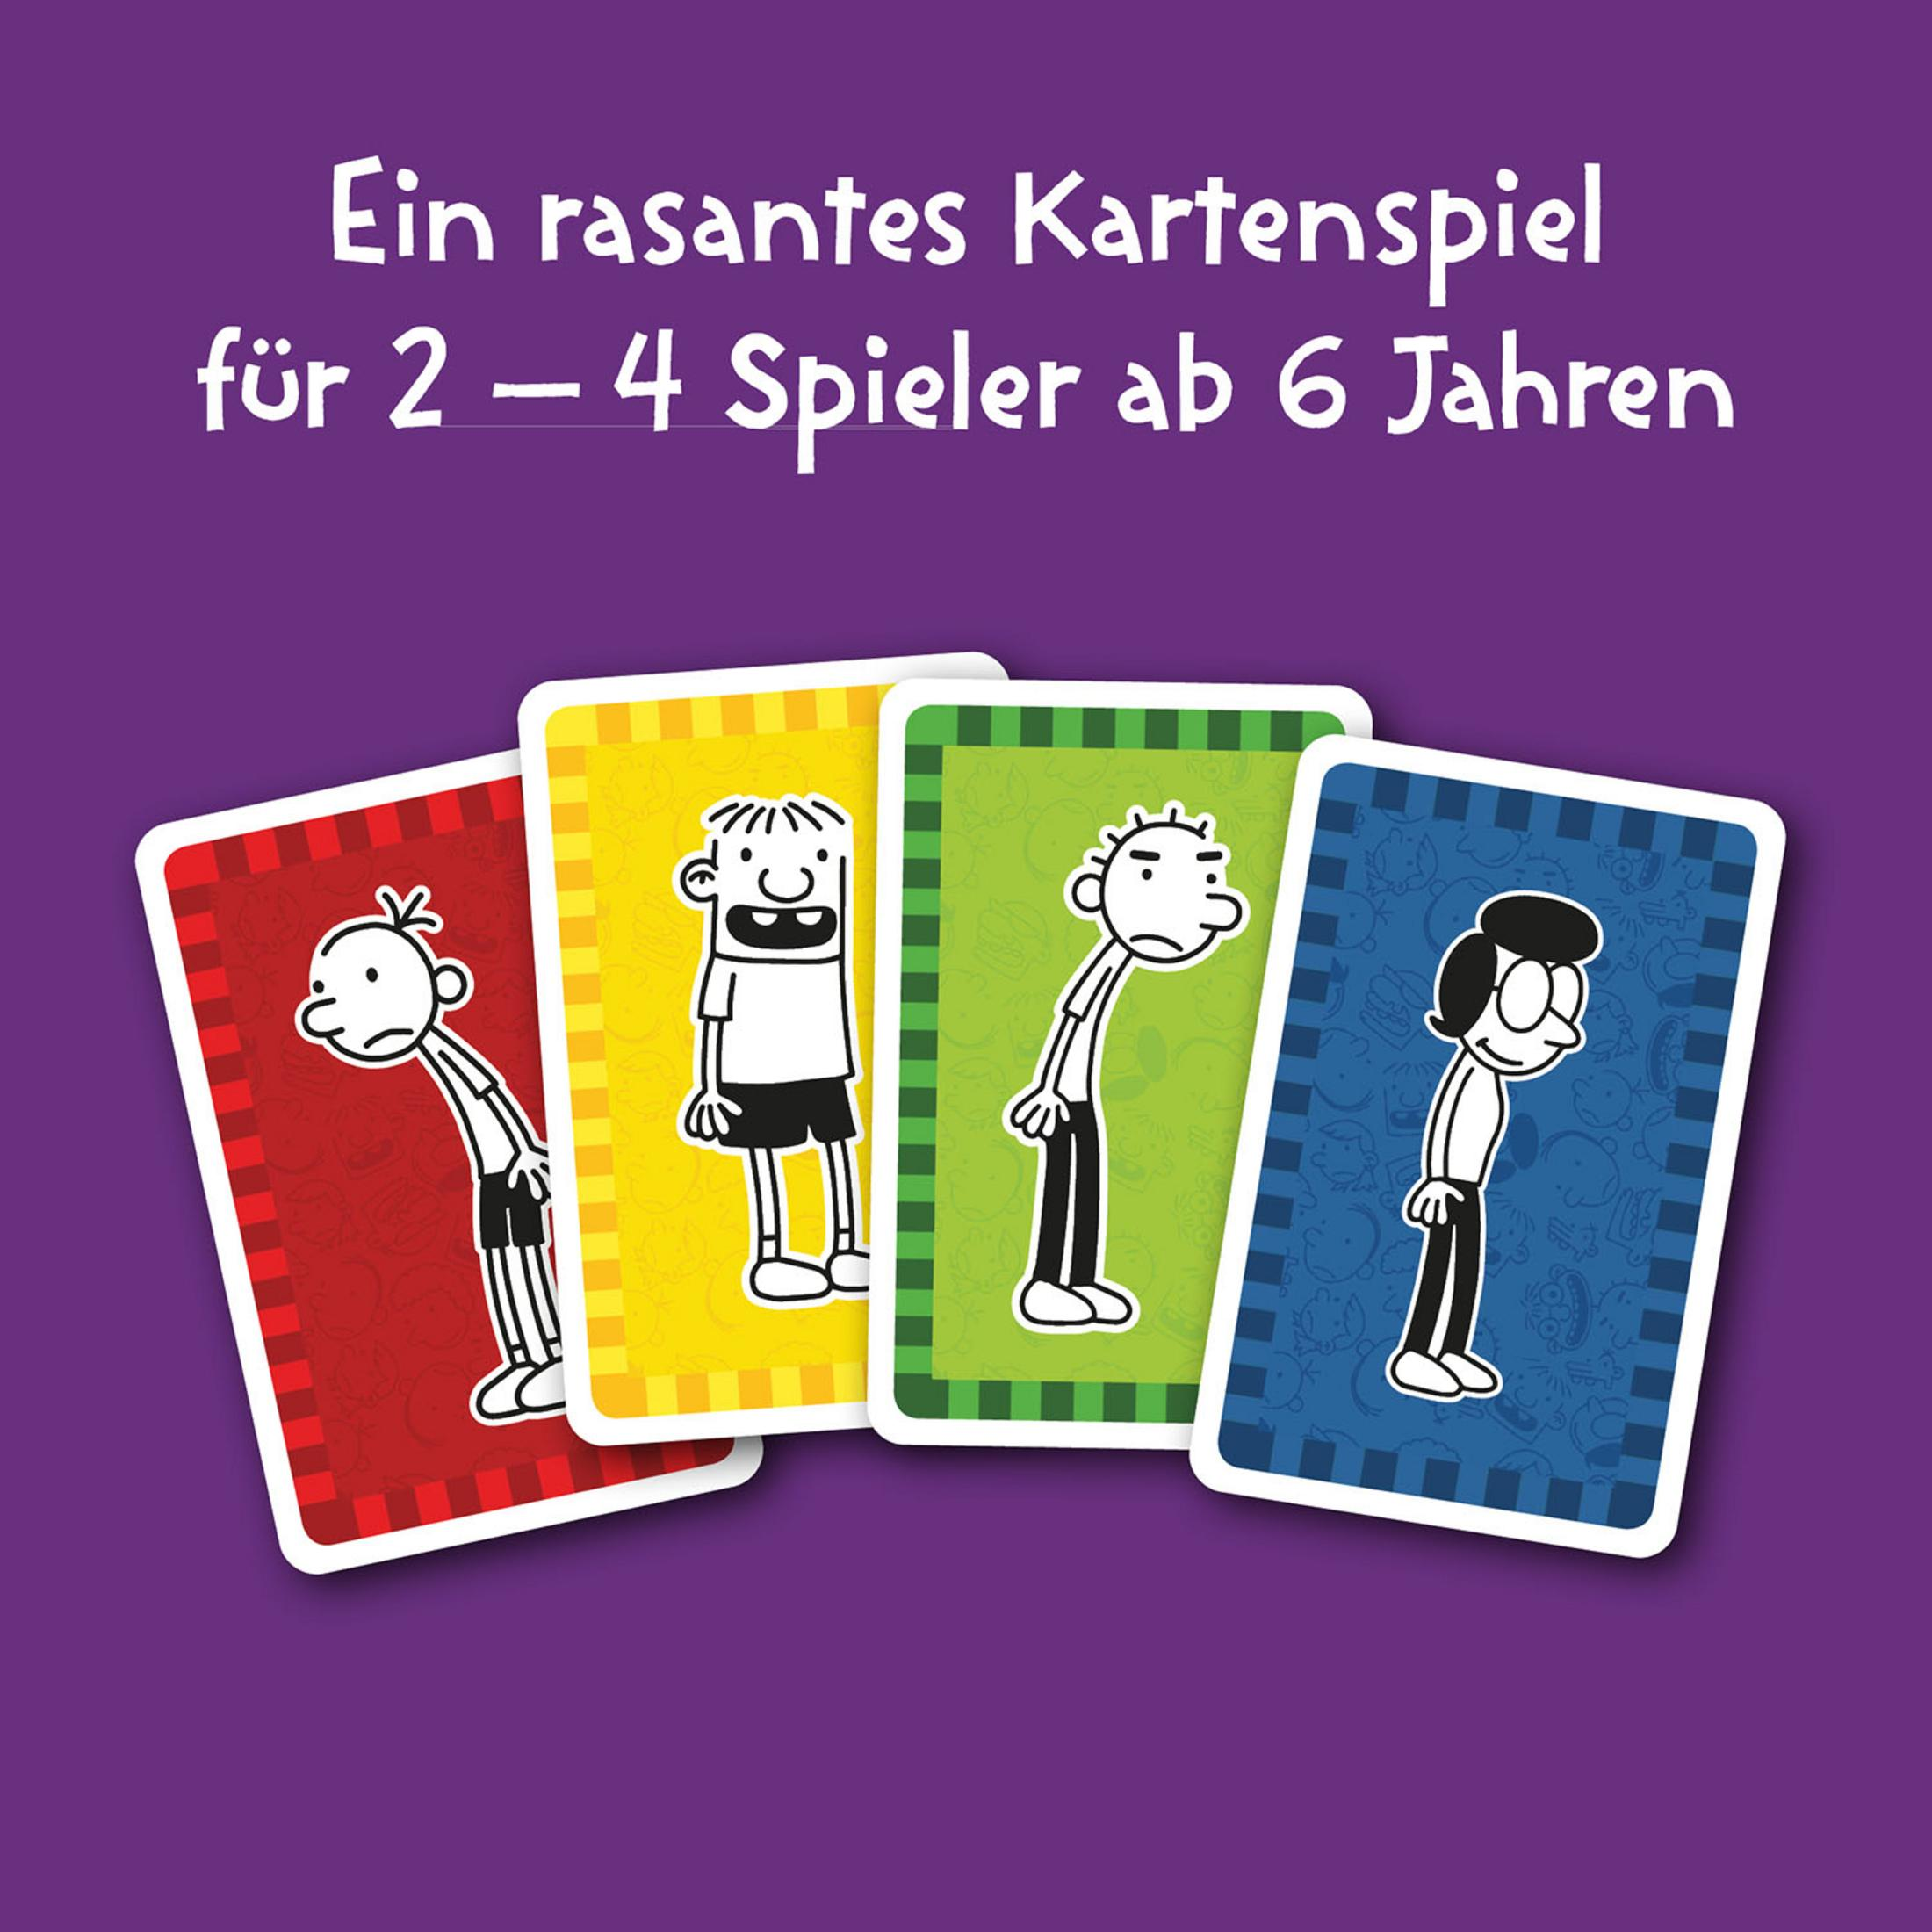 Mehrfarbig (KARTENSPIEL) Kartenspiel GREGS KOSMOS 741747 TAGEBUCH-SCHWEINEHAUFEN